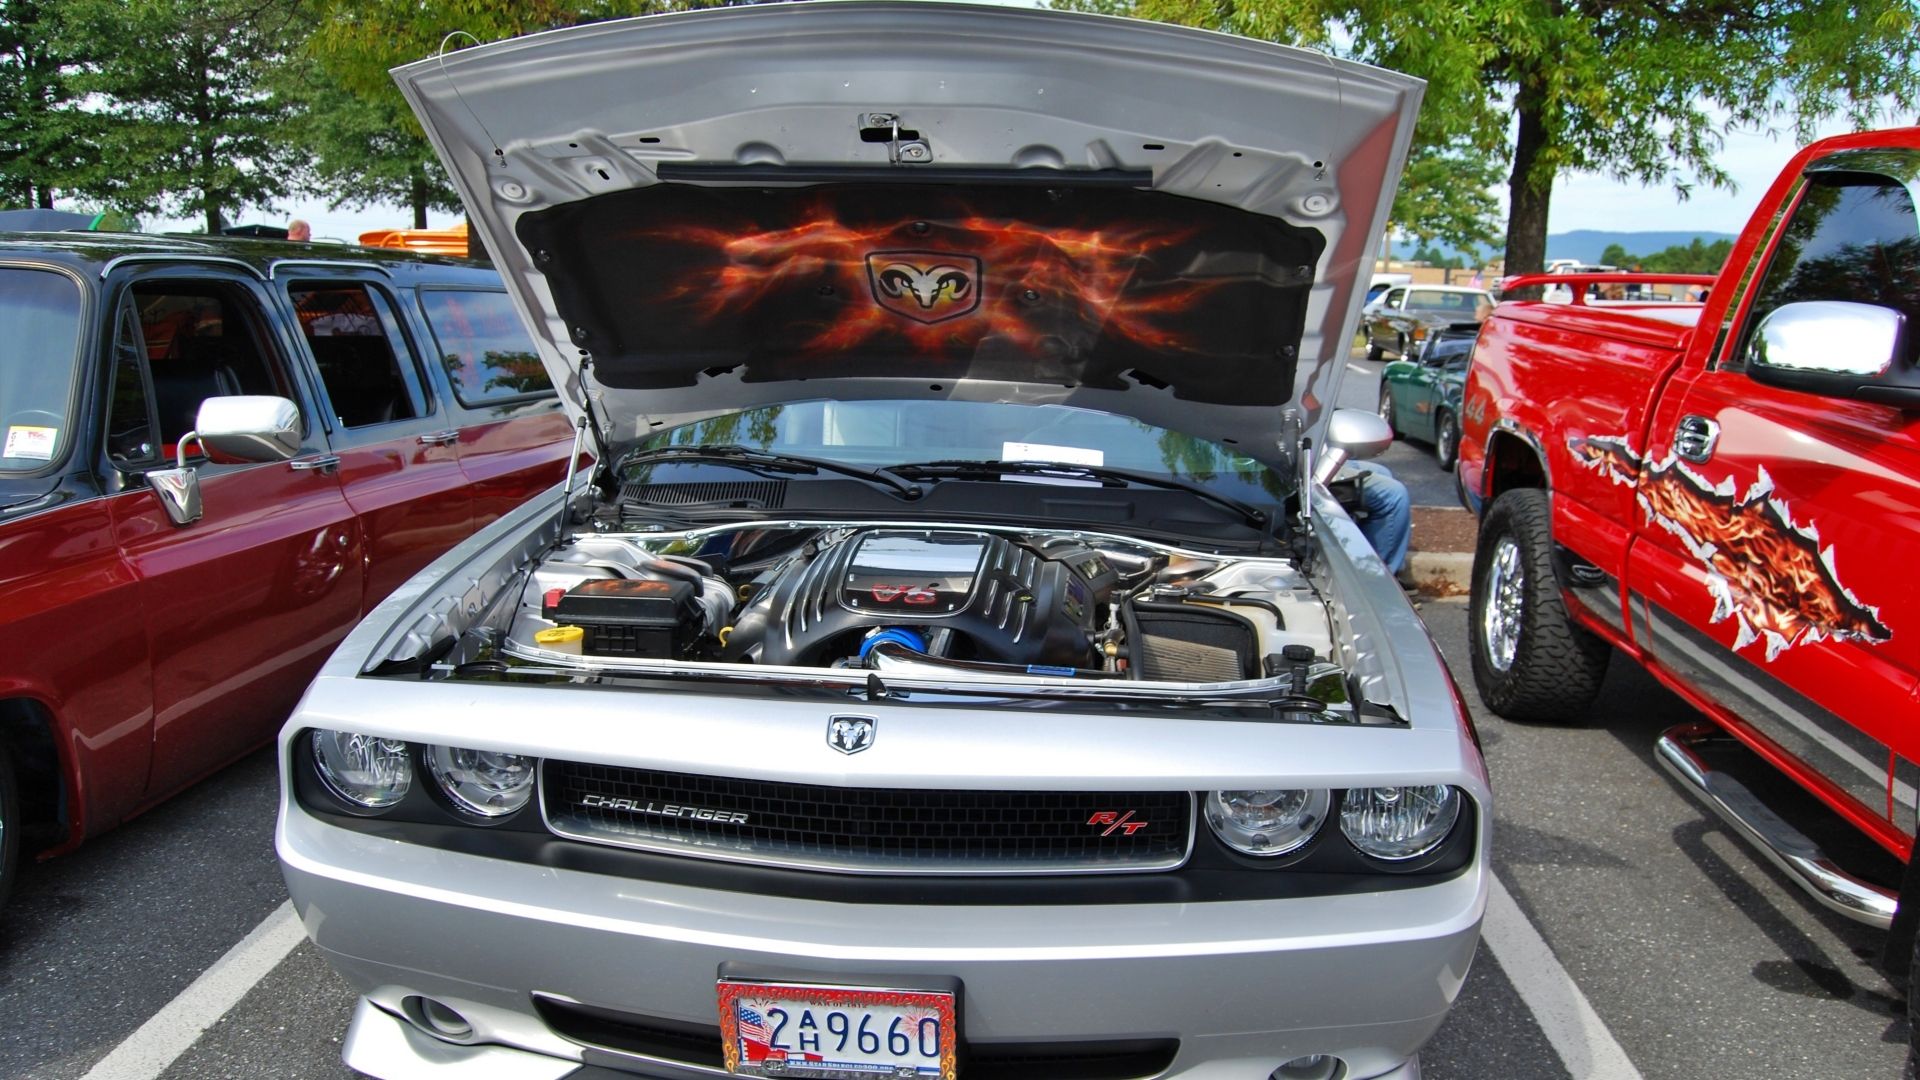 Dodge Challenger R/T V-8 engine